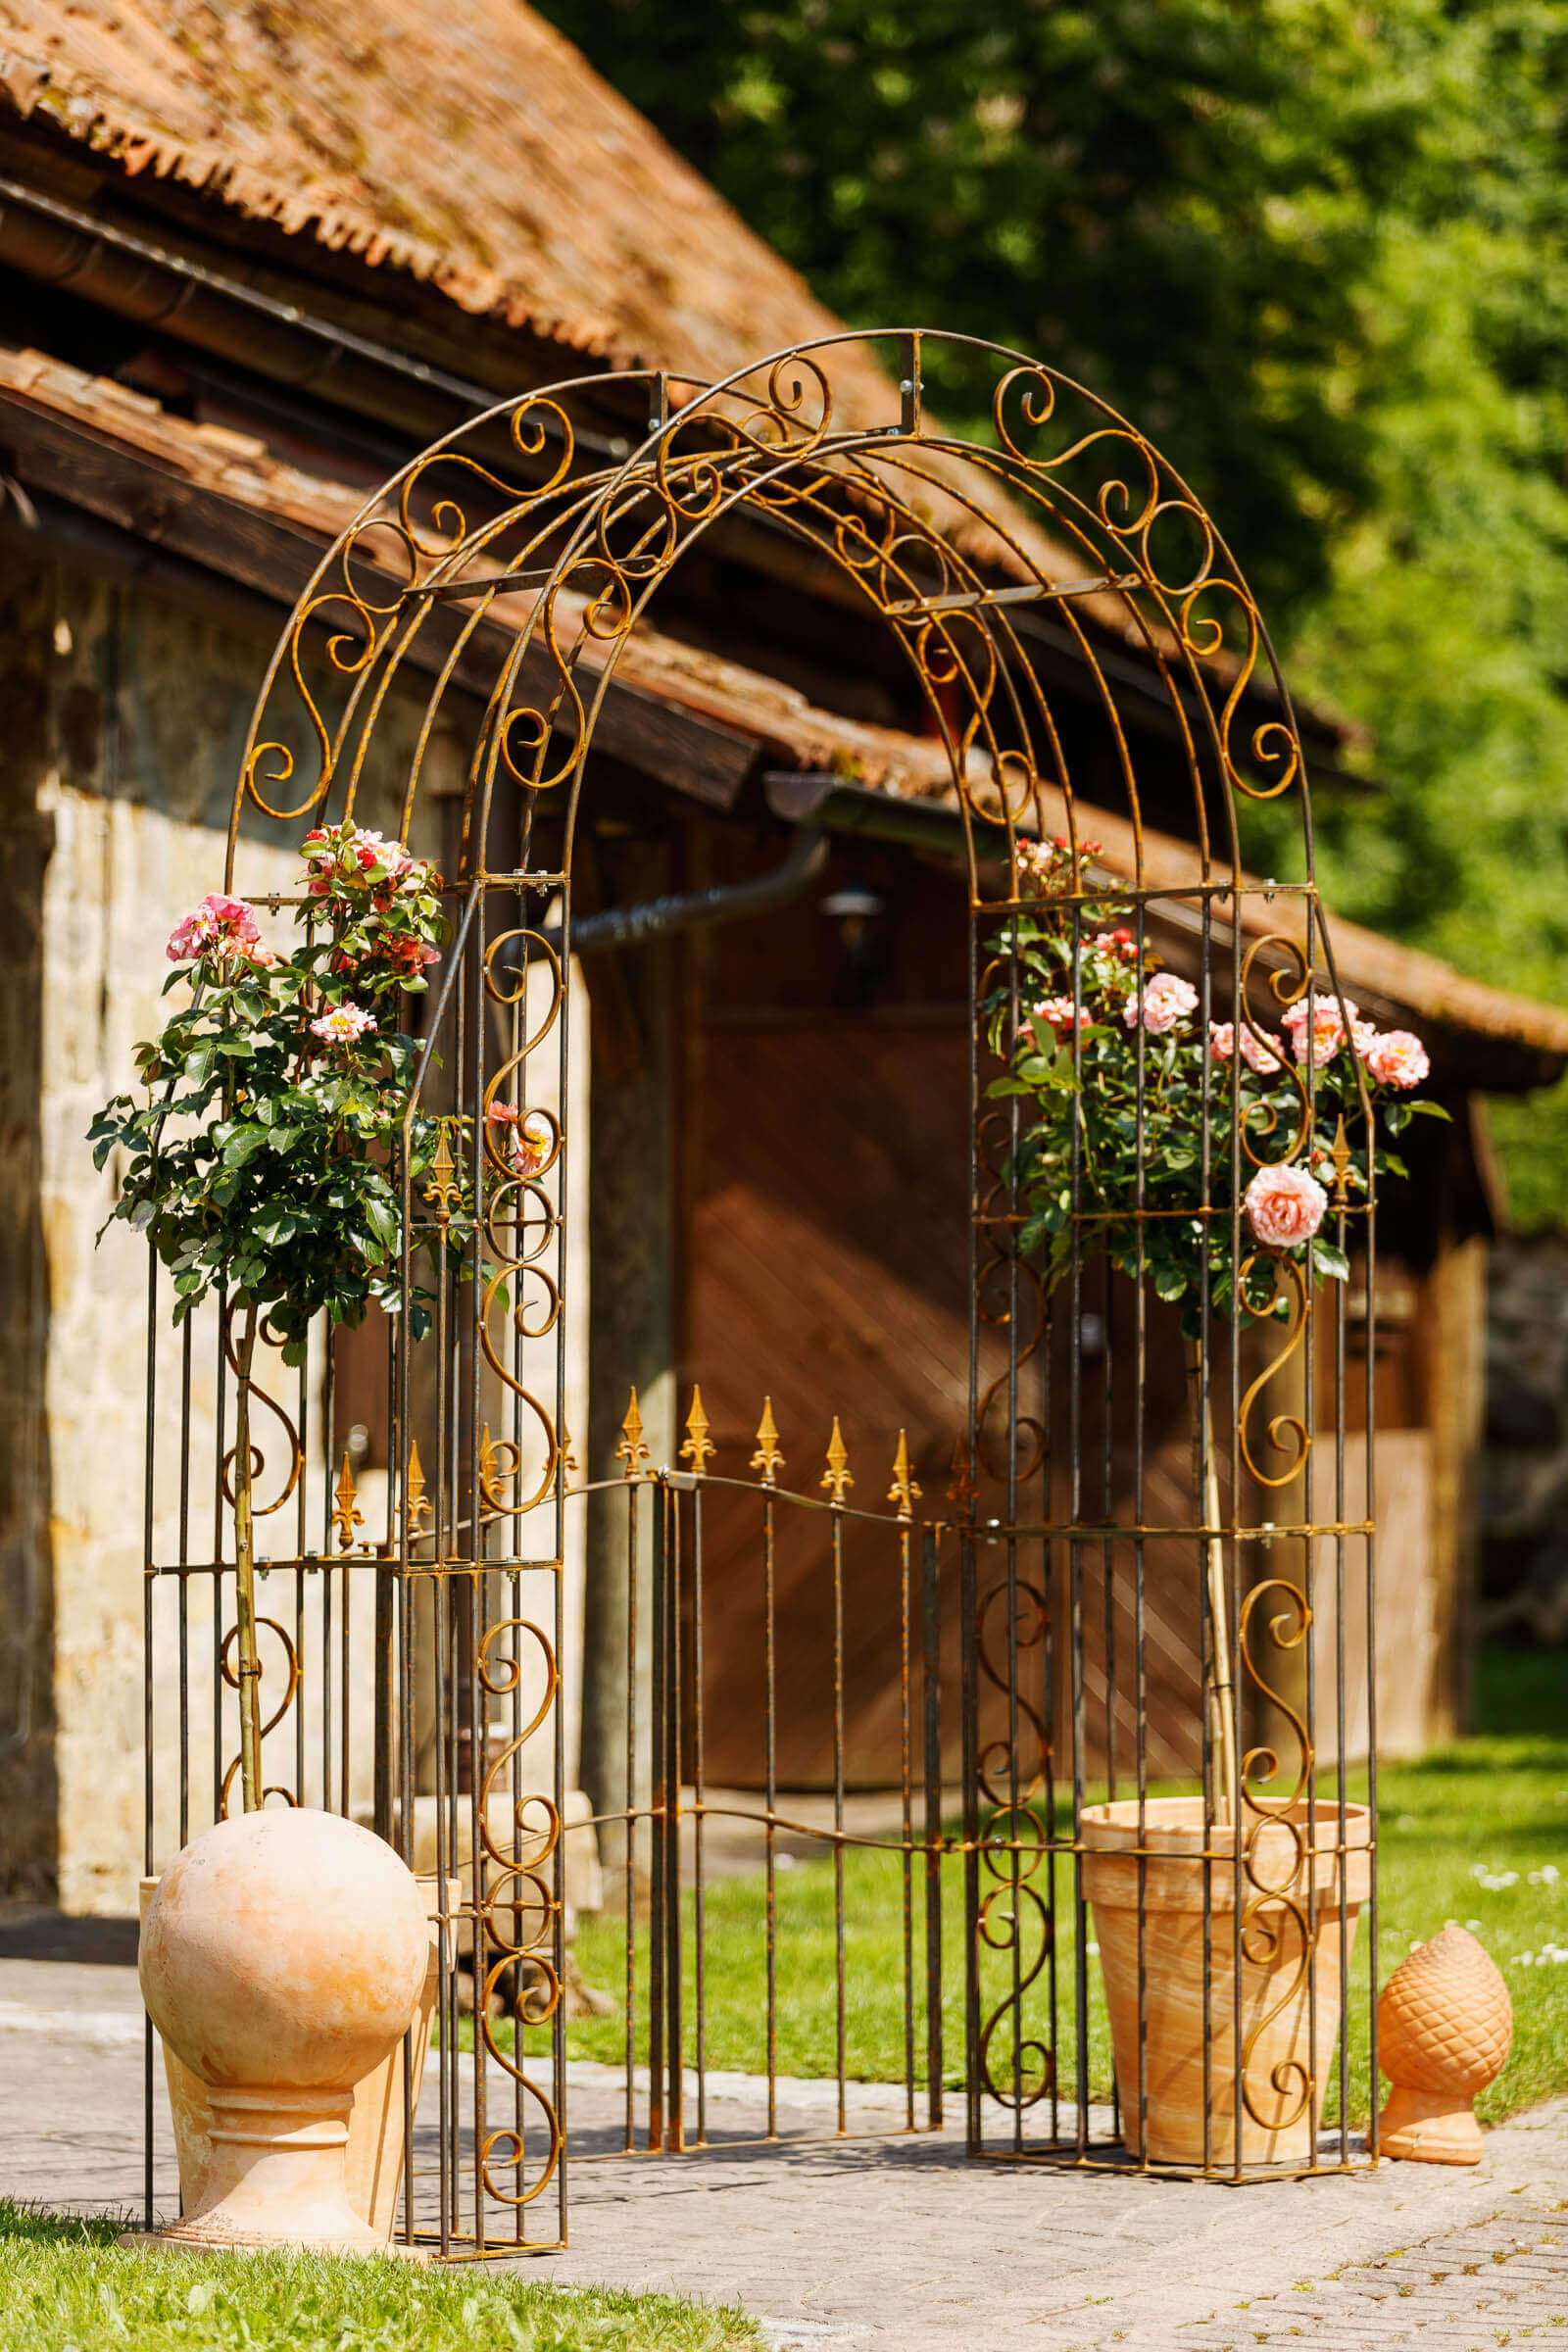 Rosenbogen Calabria in unbeschichteter Ausführung mit einem Tür und mit Rosen verziert